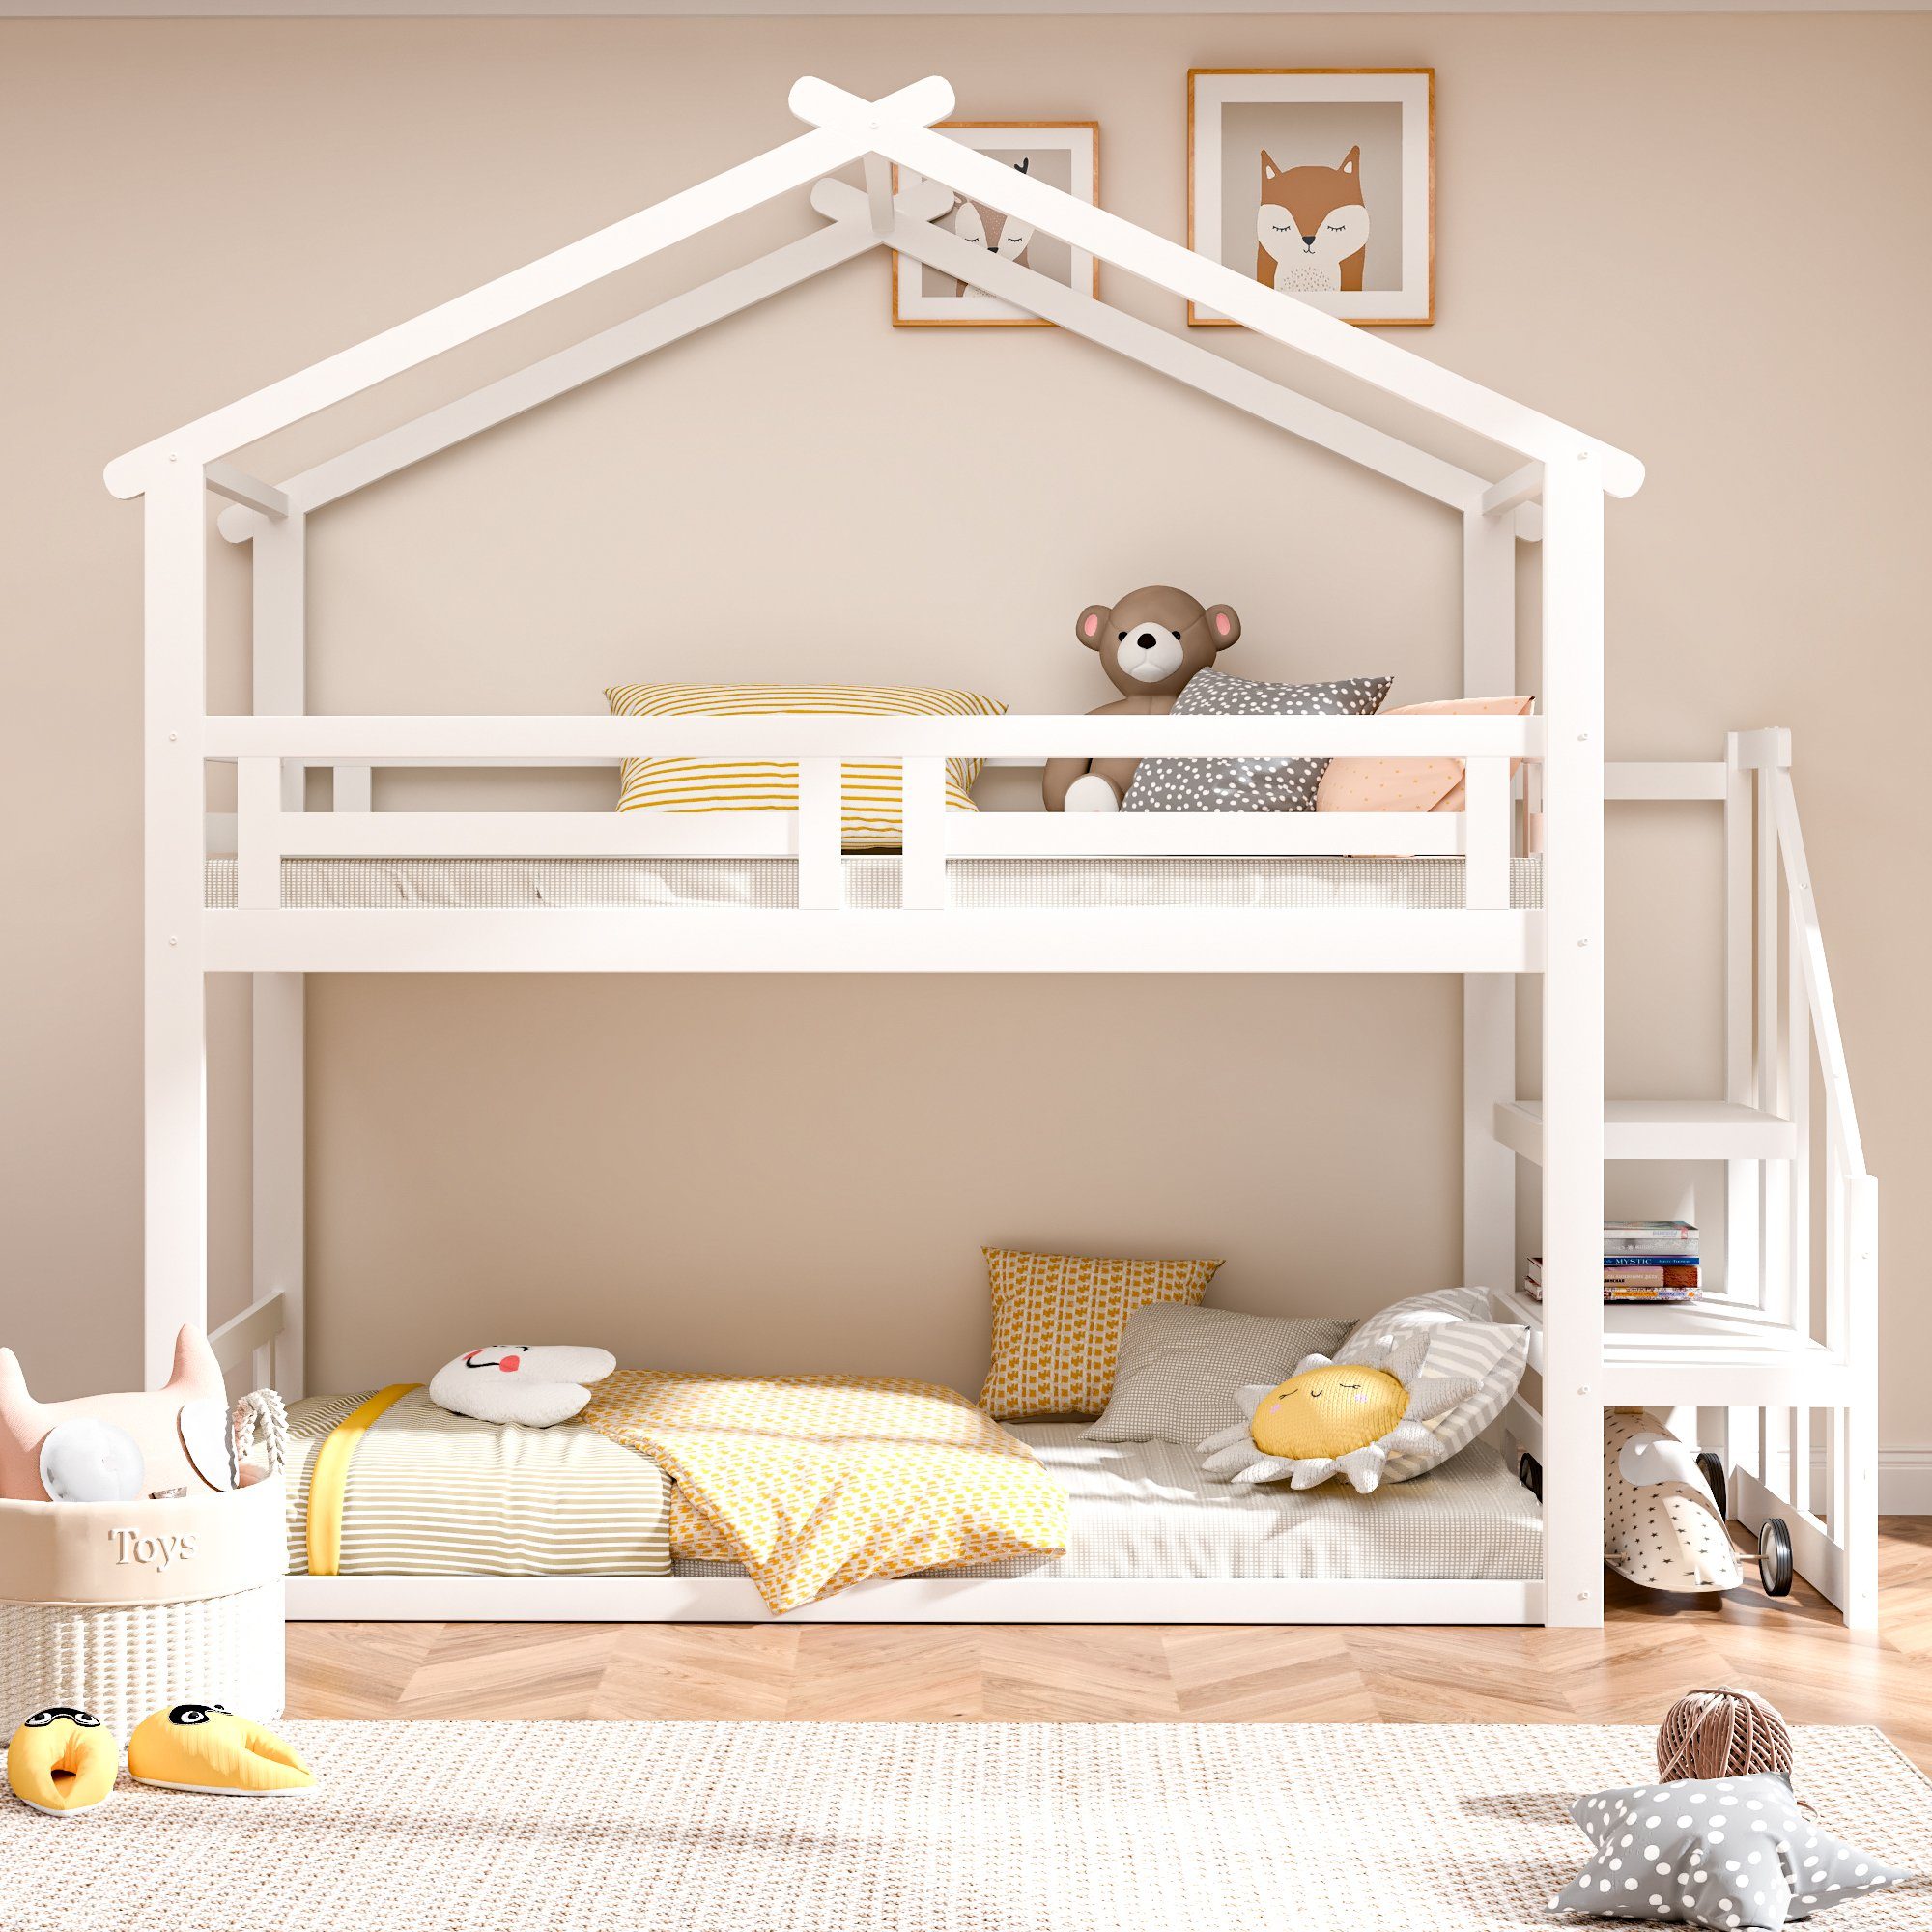 SOFTWEARY Etagenbett mit 2 Schlafgelegenheiten, Lattenrost und Treppe (90x200 cm), Holzbett aus Kiefer, Hausbett inkl. Rausfallschutz, Kinderbett